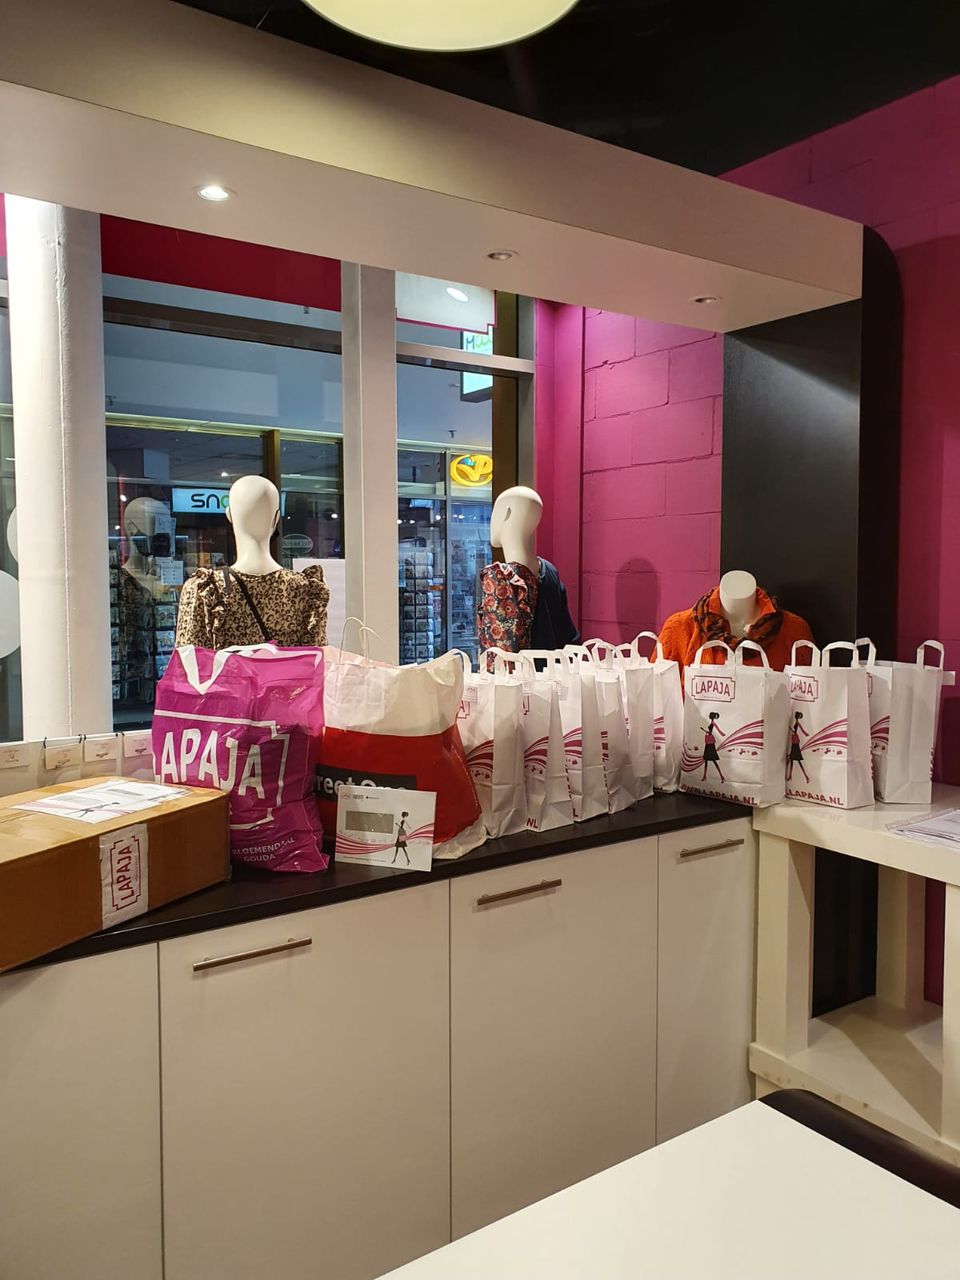 Foto van tassen vol kleding op de toonbank van de dameskledingwinkel Lapaja Zoetermeer.